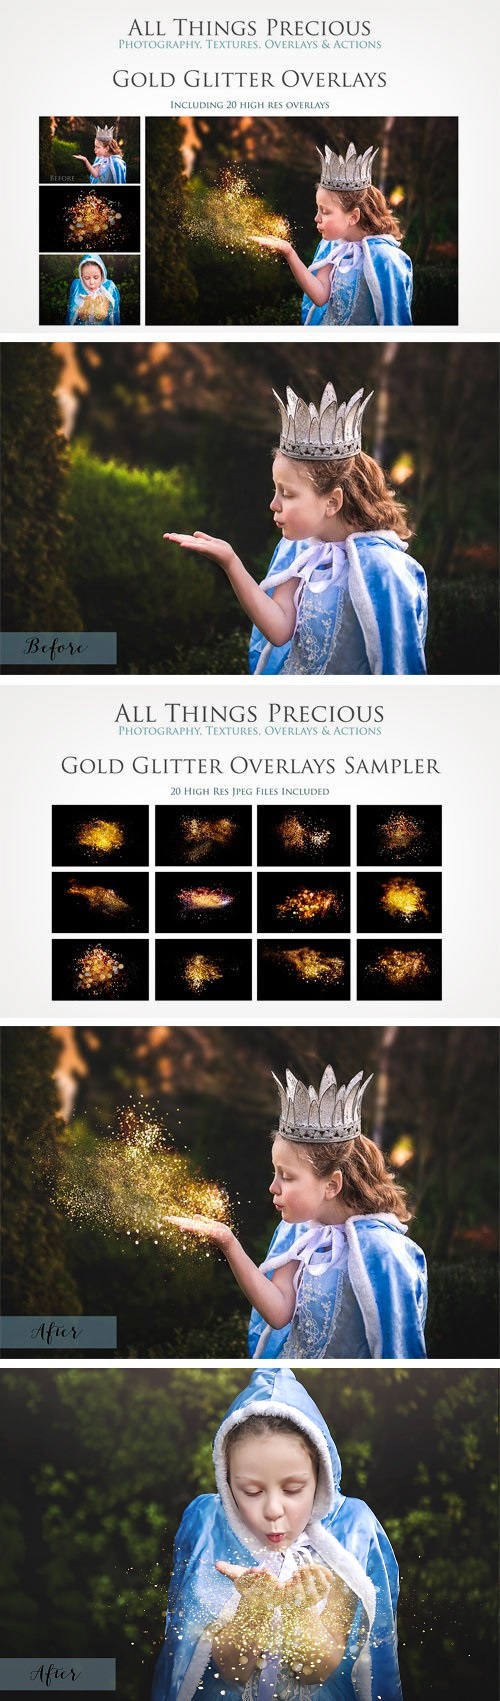 Fine Art Golde Glitter Overlays - 1779537